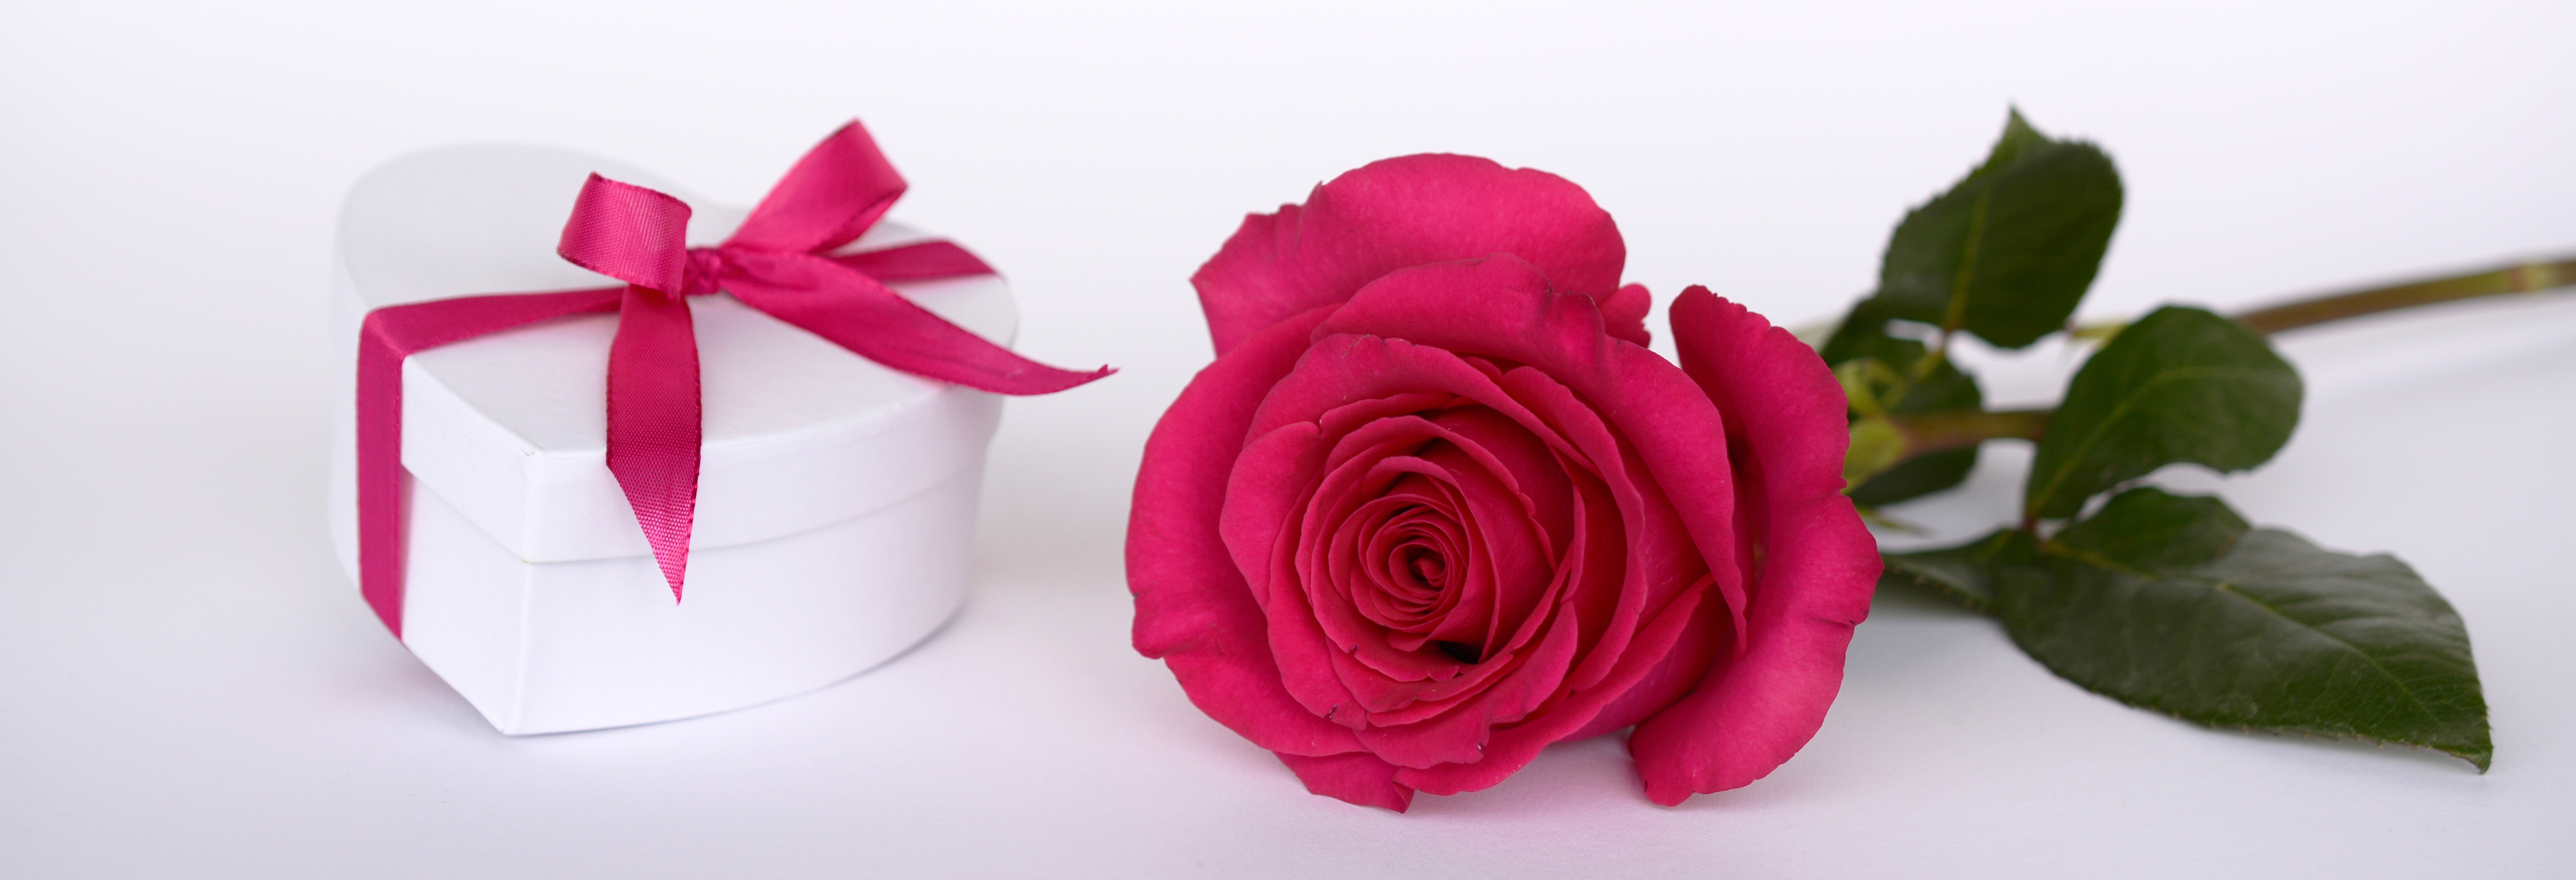 免费照片白色心形包装盒，内有一朵粉色玫瑰